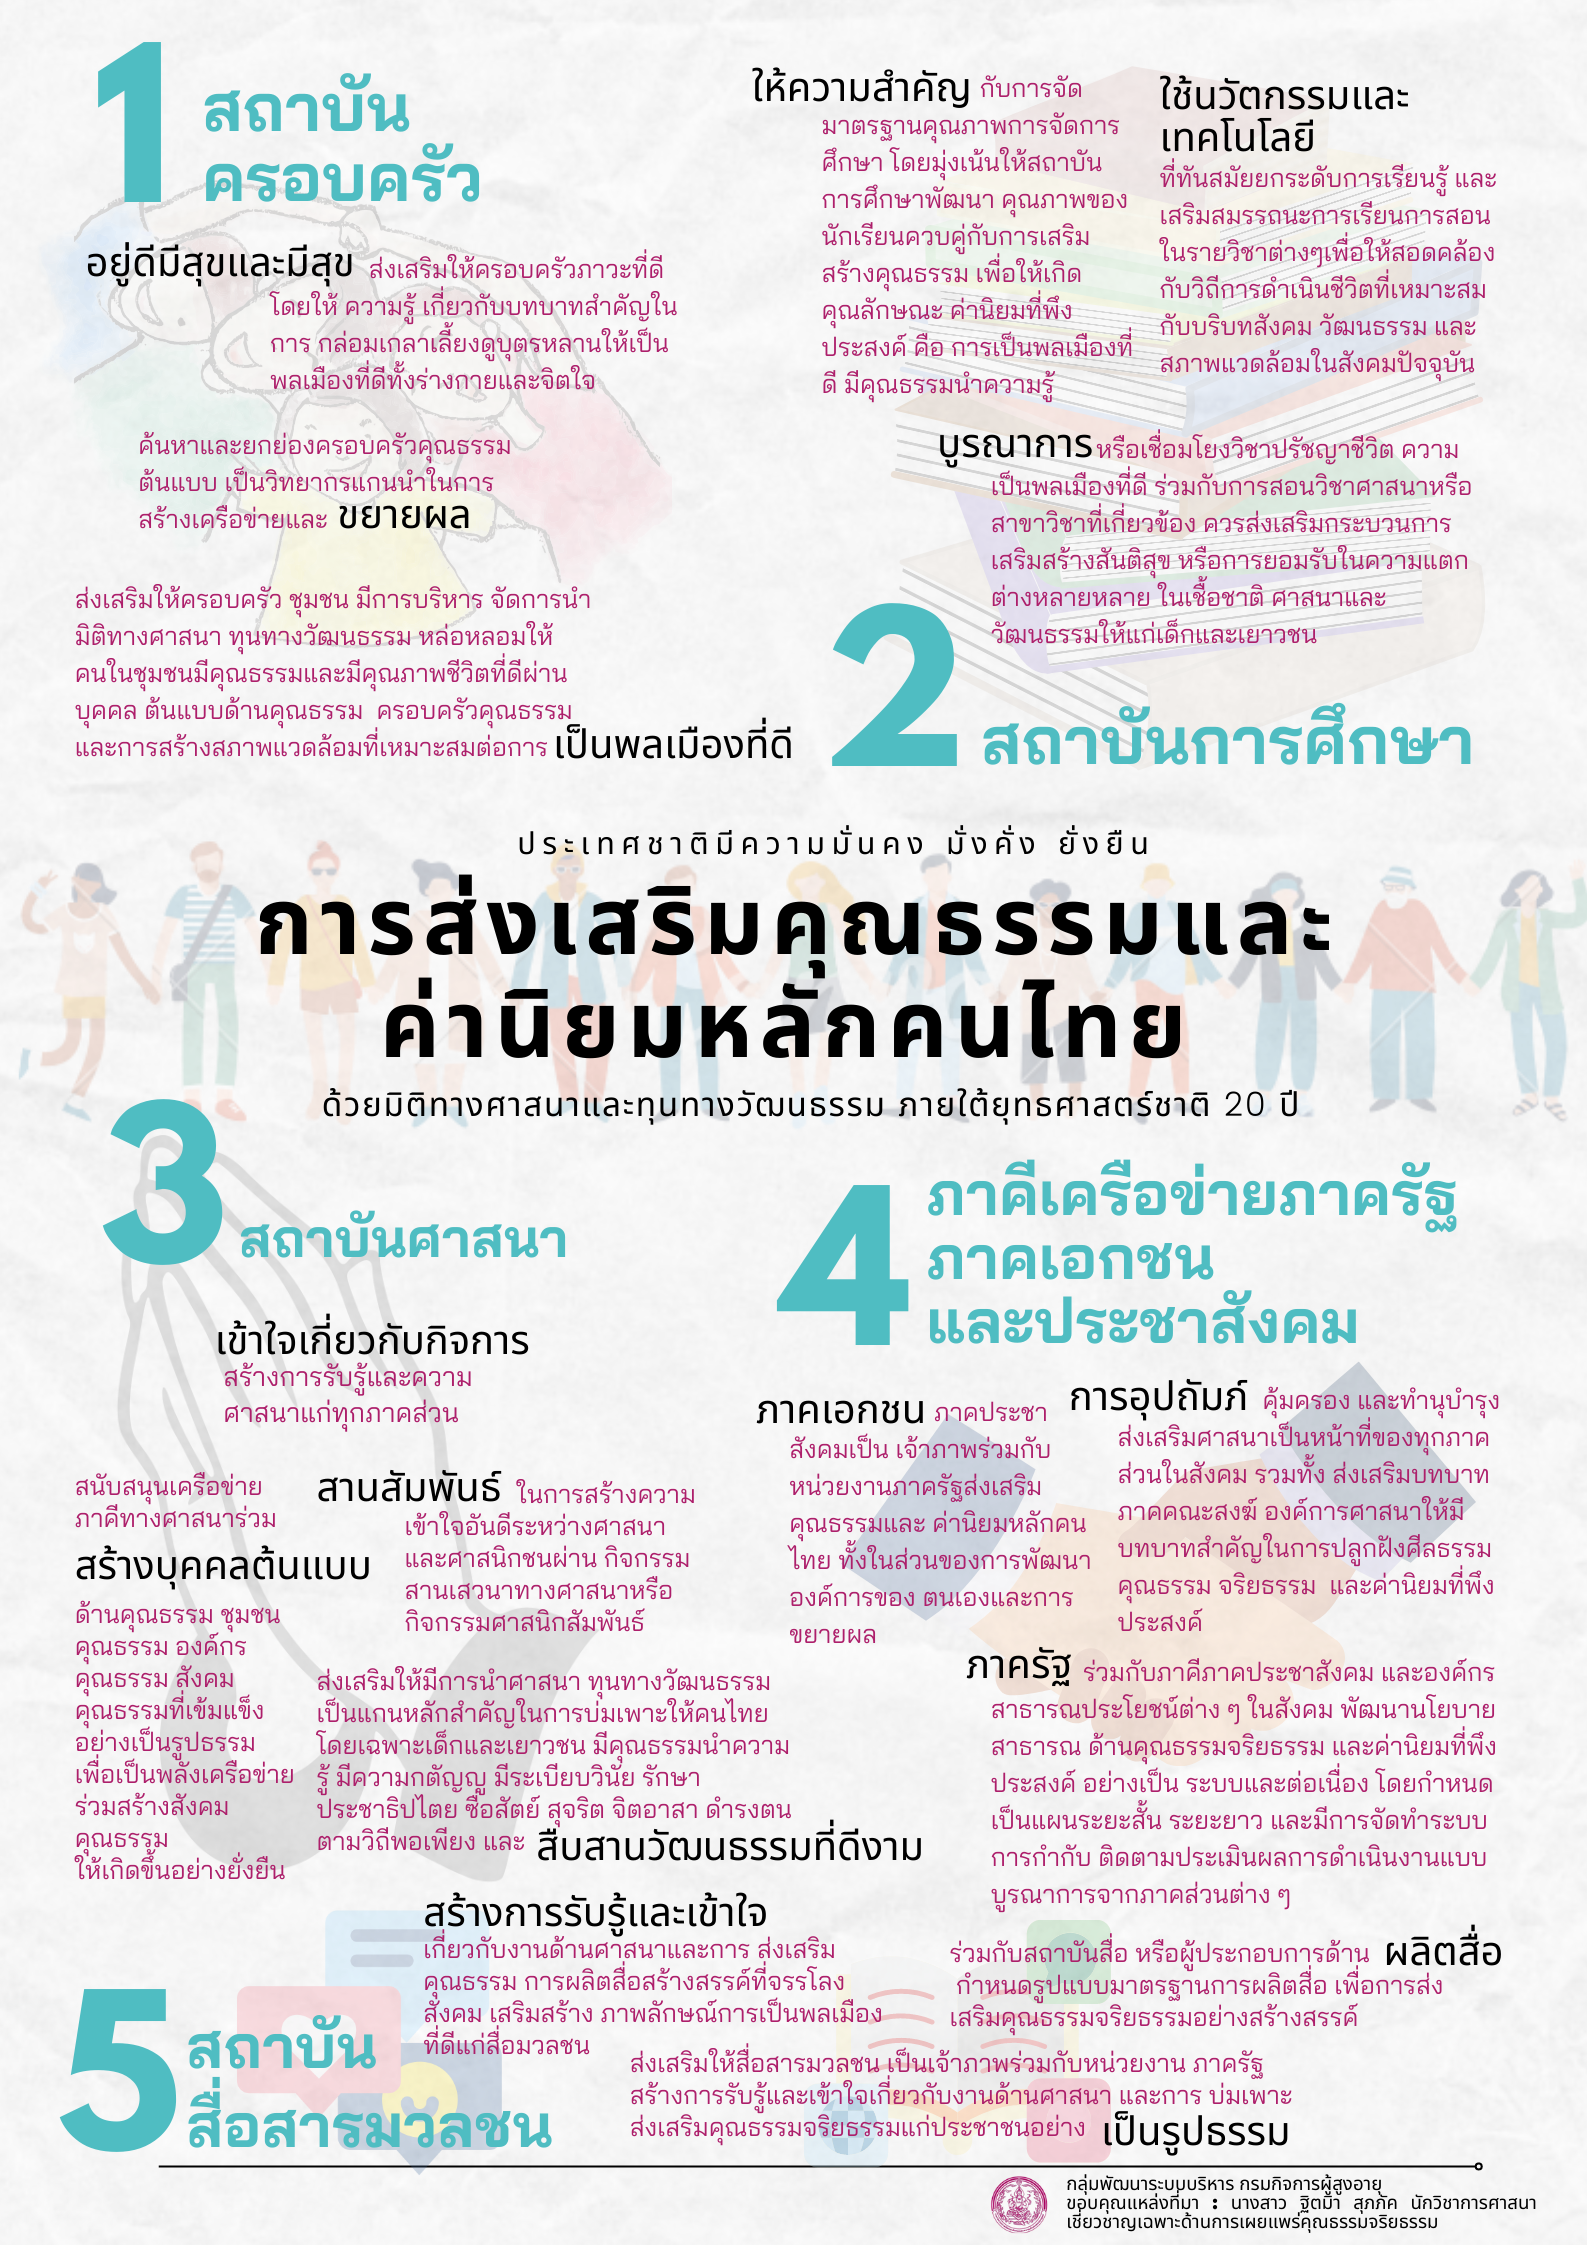 การส่งเสริมคุณธรรมและค่านิยมหลักของคนไทย